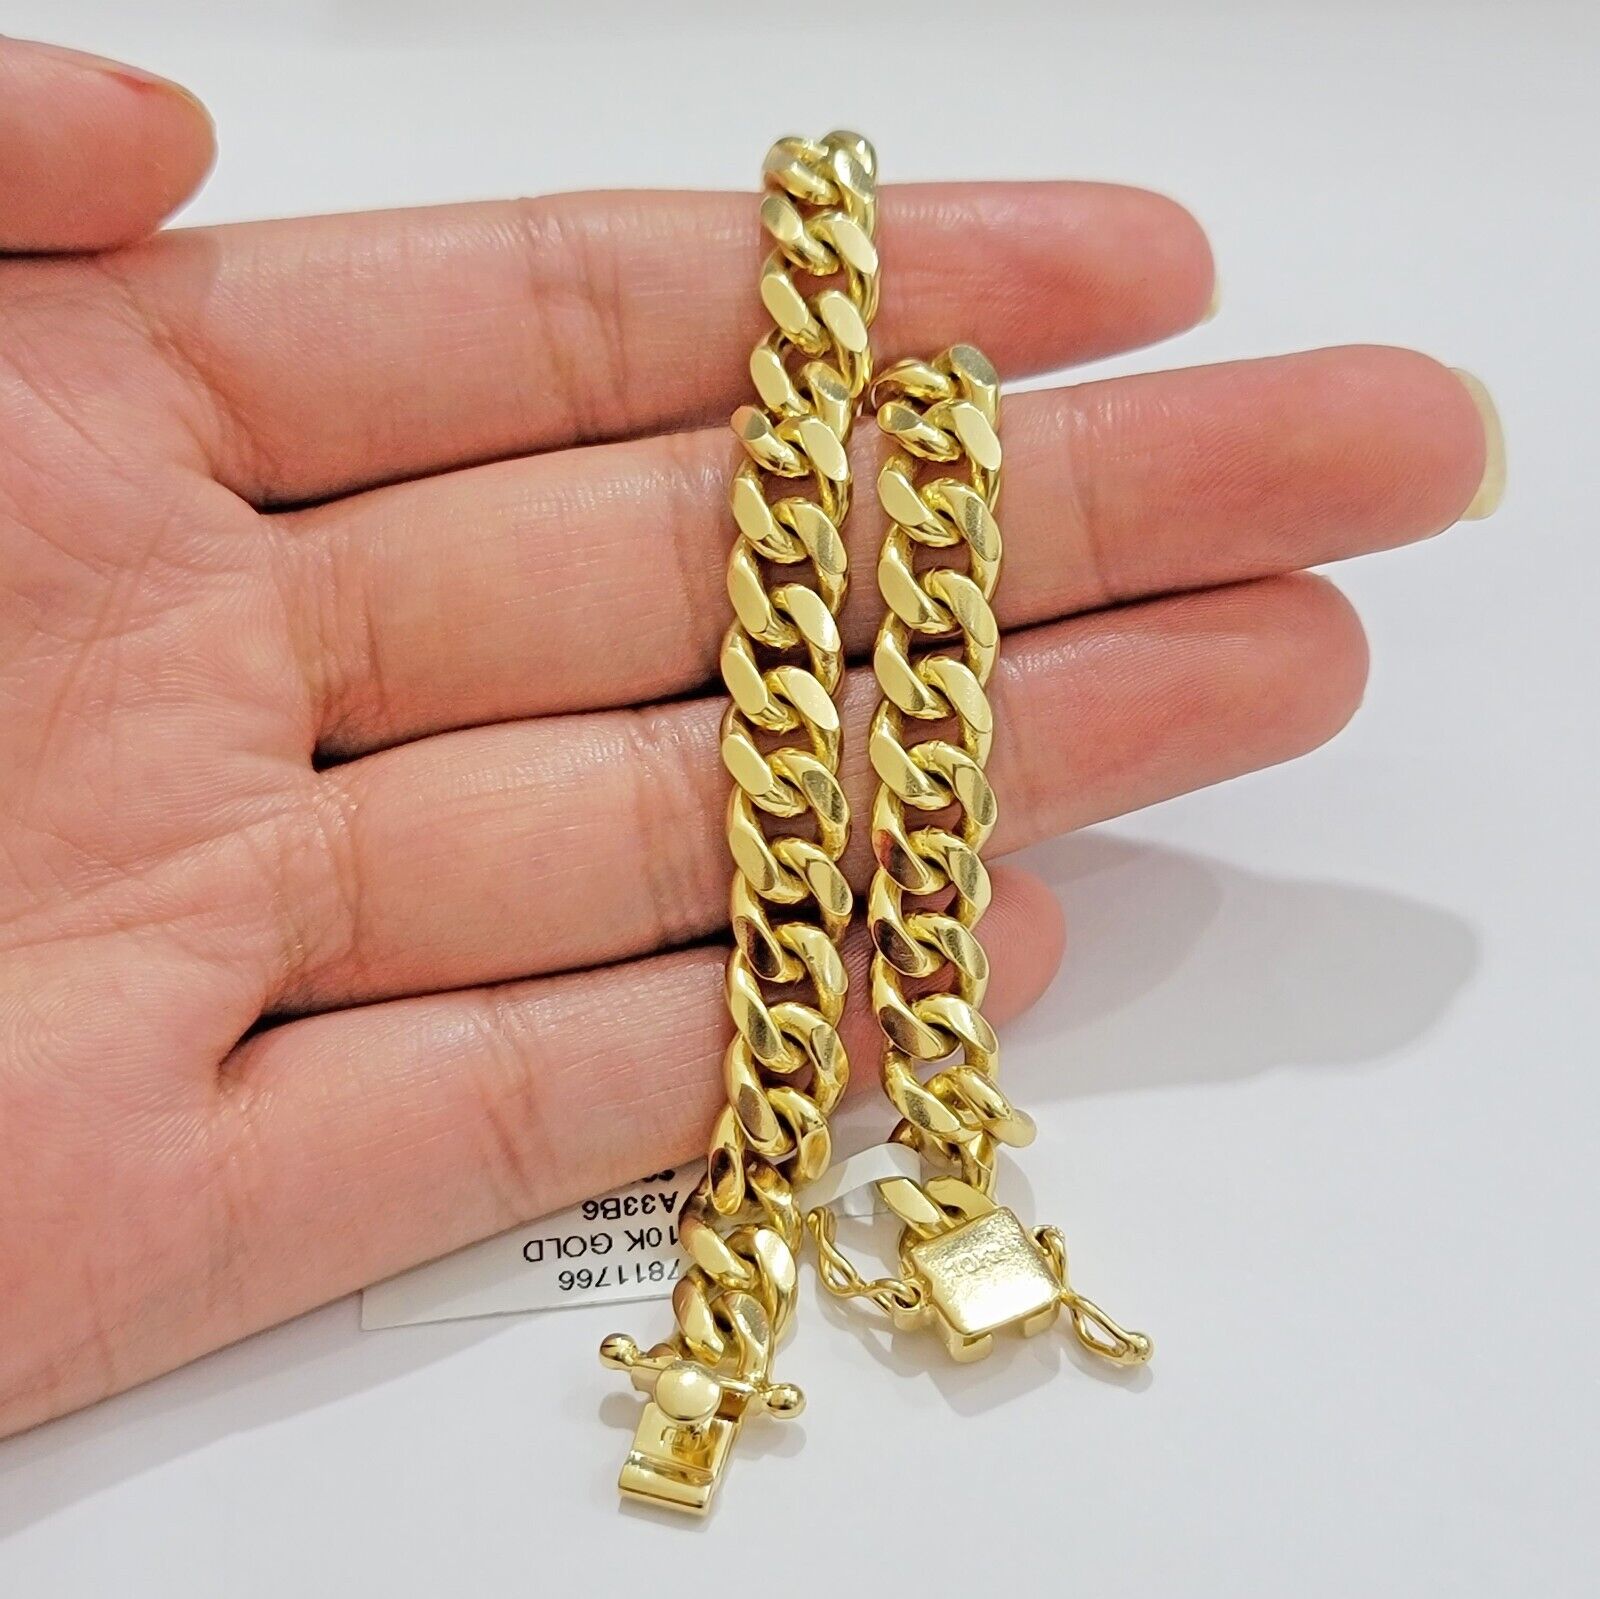 Solid 10k Gold Bracelet Cuban Link 8mm 7.5